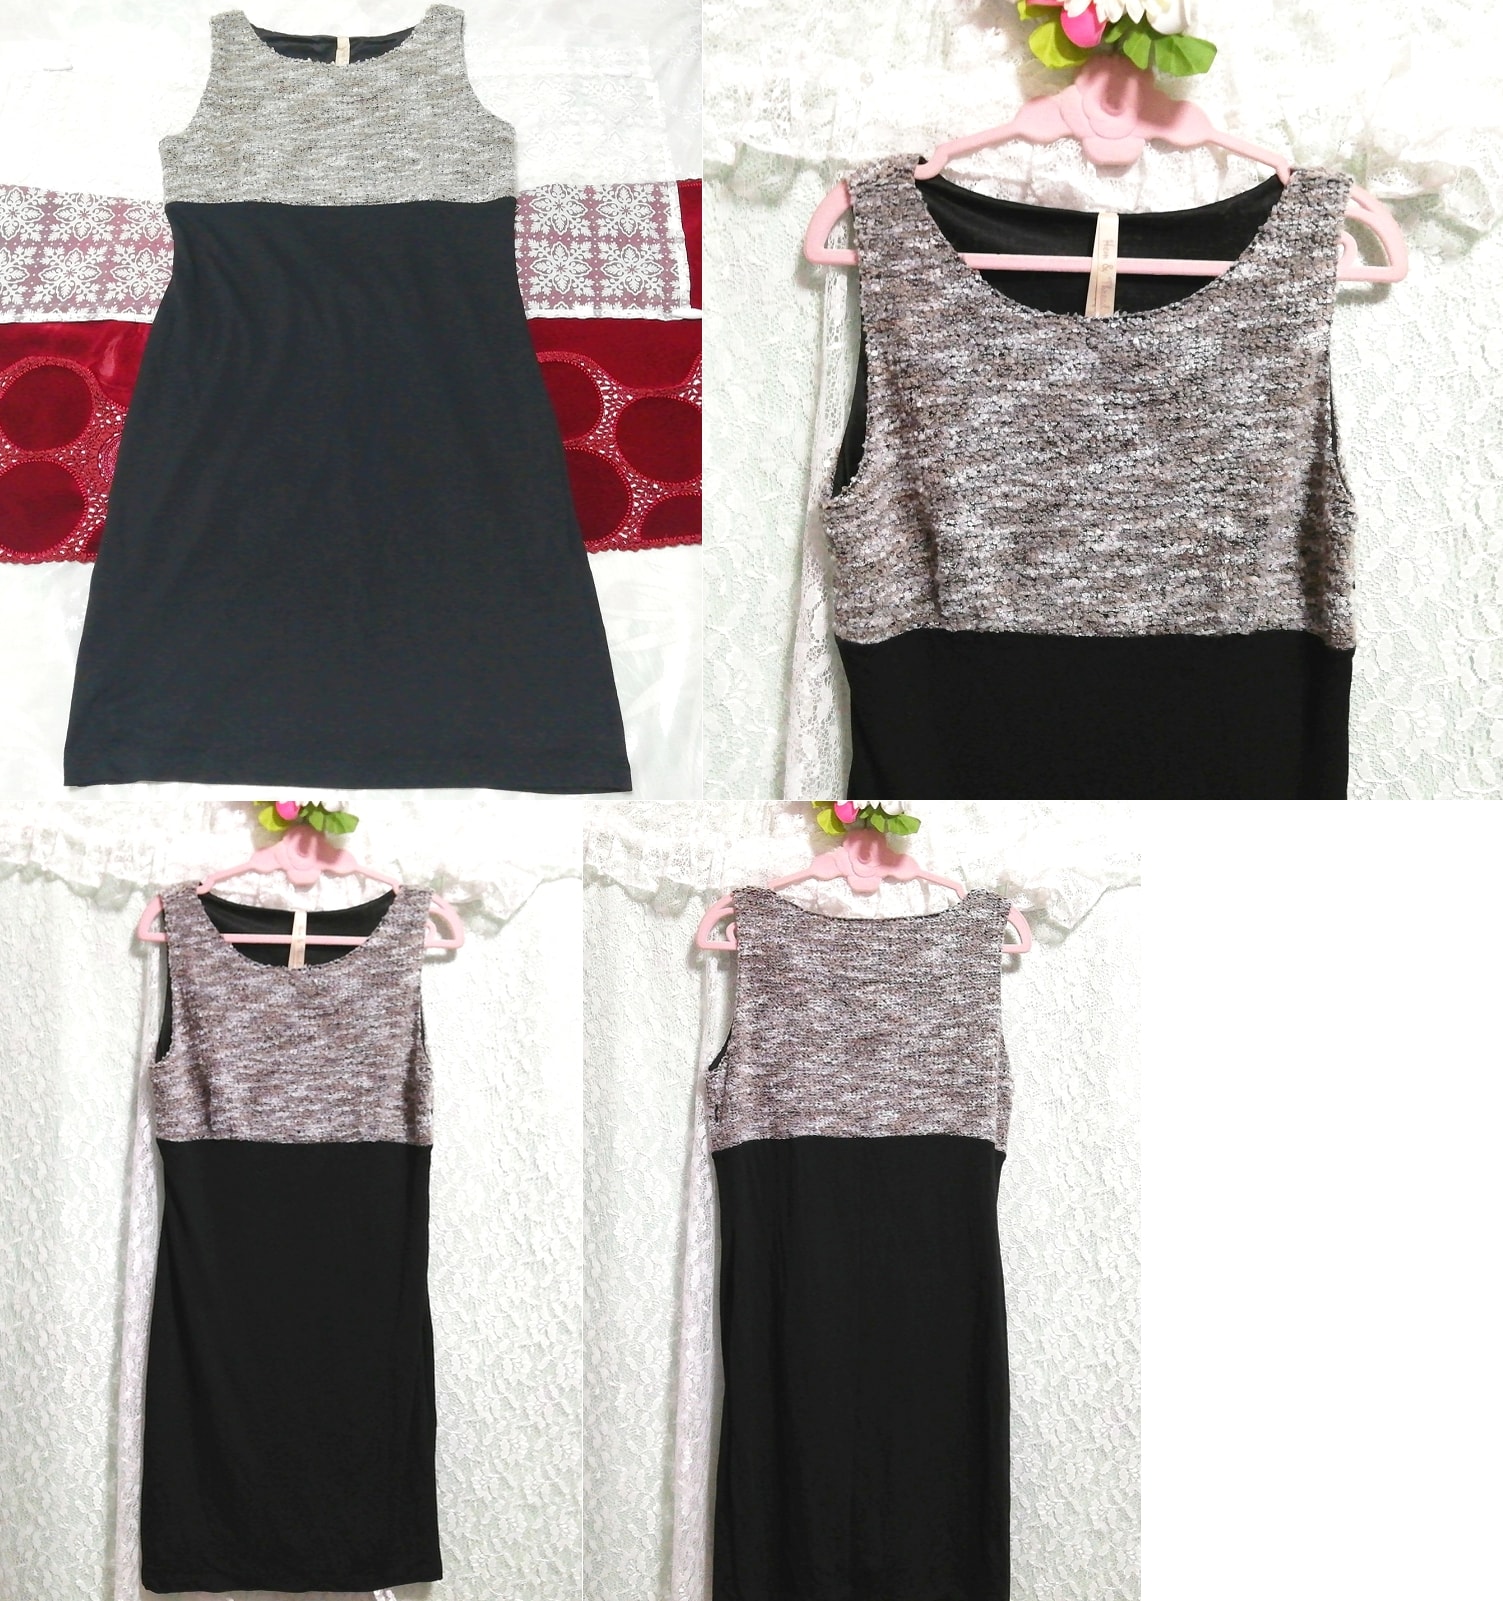 灰トップス黒スカートノースリーブネグリジェワンピース Gray tops black skirt sleeveless negligee dress, チュニック, 袖なし、ノースリーブ, Mサイズ